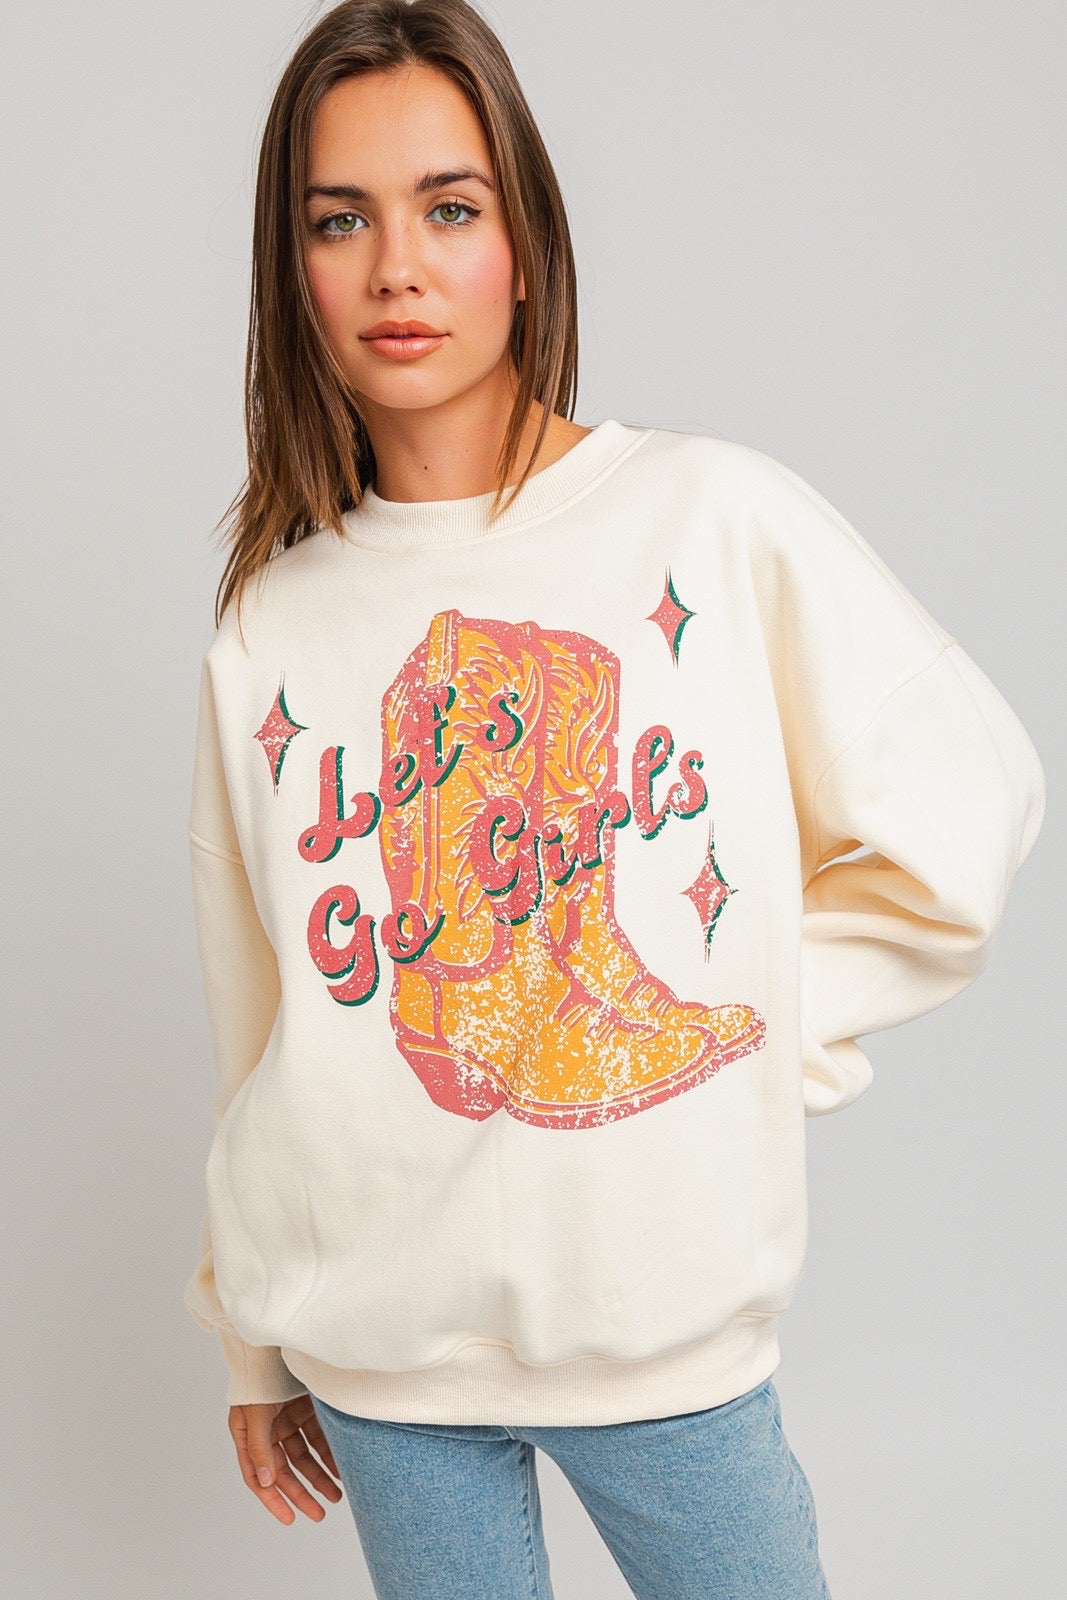 “Let’s Go Girls” sweatshirt